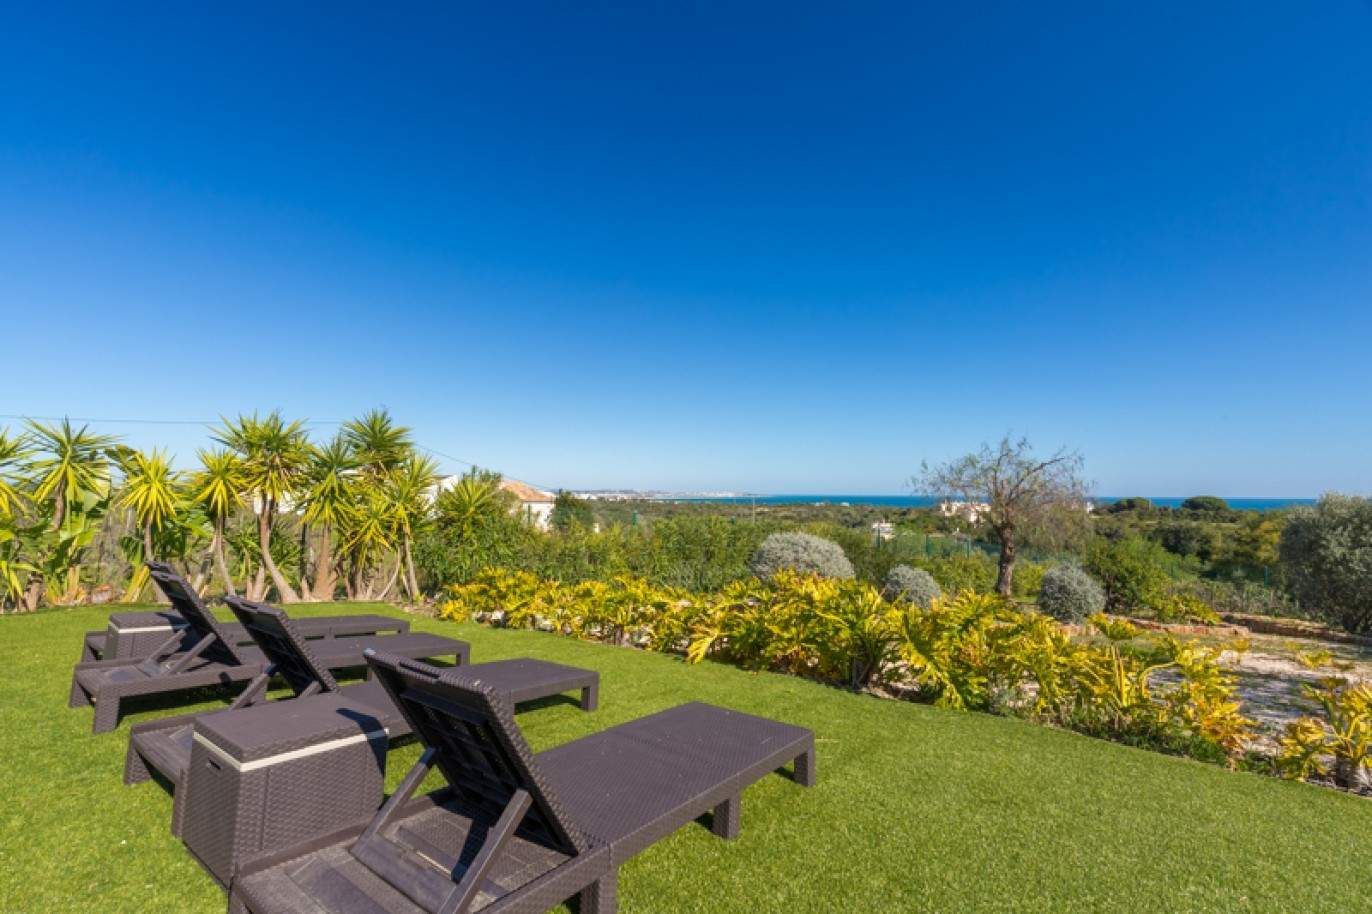 Moradia à venda, com vista mar, perto praia e golfe, Algarve, Portugal_76405